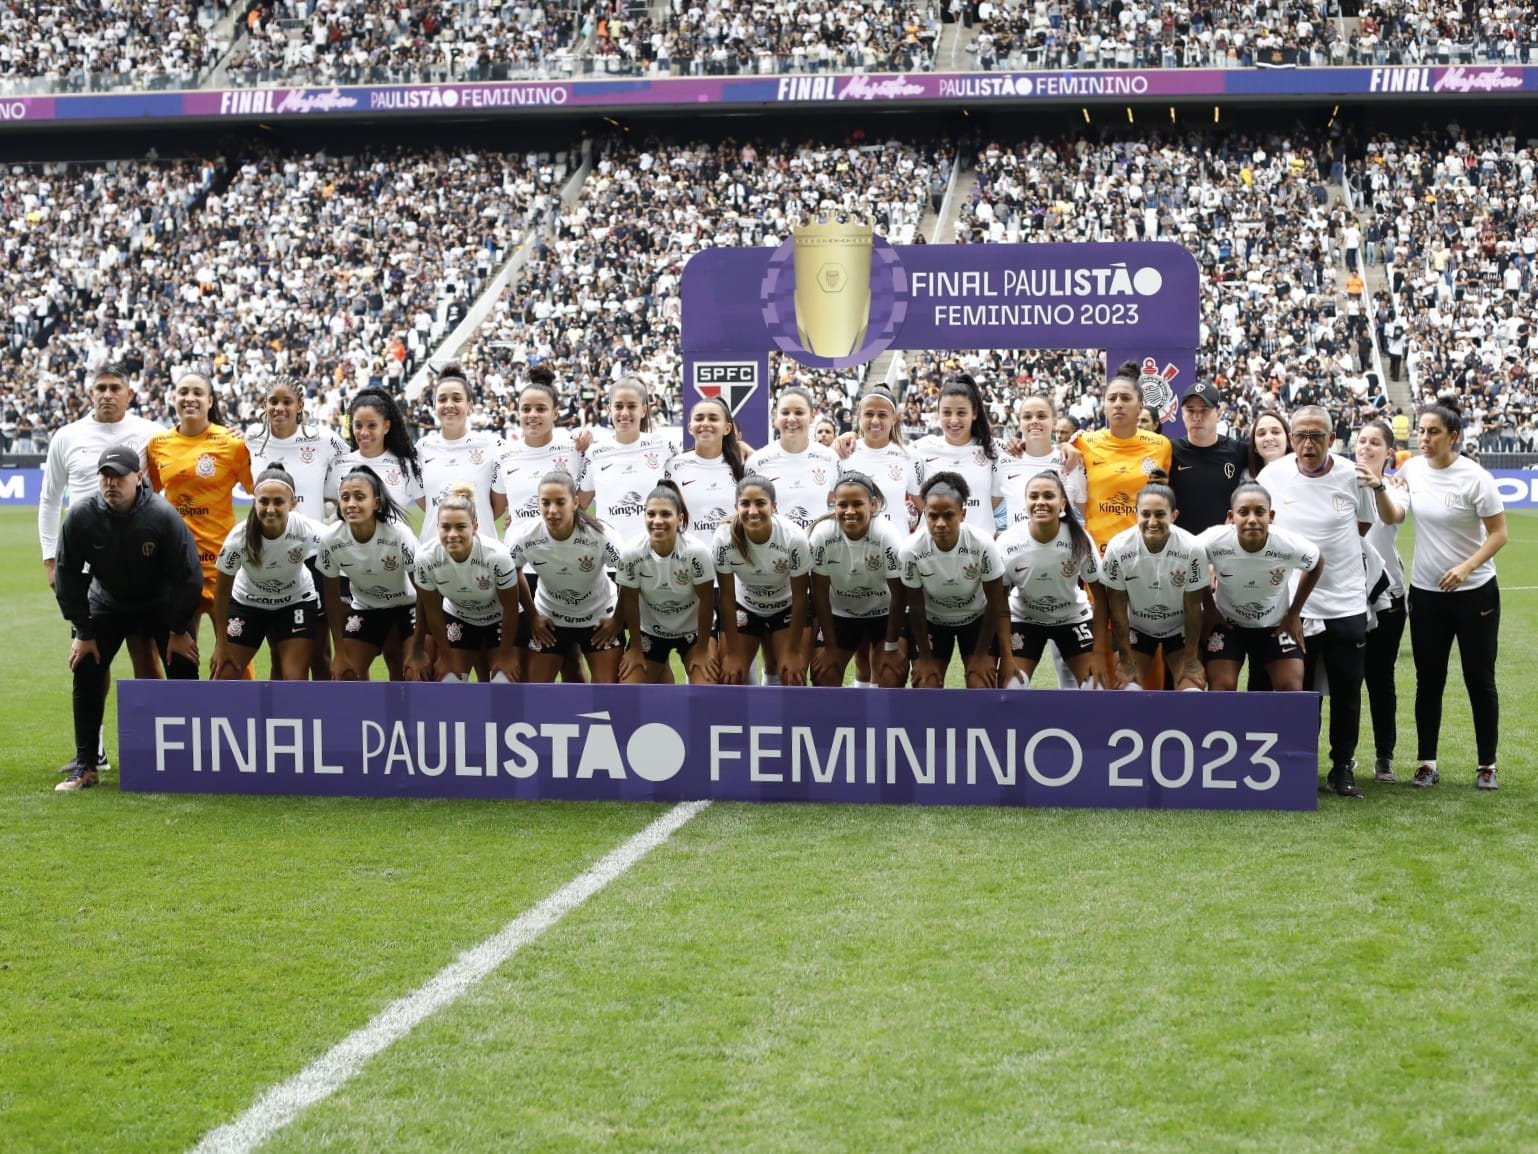 Fielzone - Paulistão Feminino Corinthians x São Paulo FINAL 26.11 -  Camarote FielZone